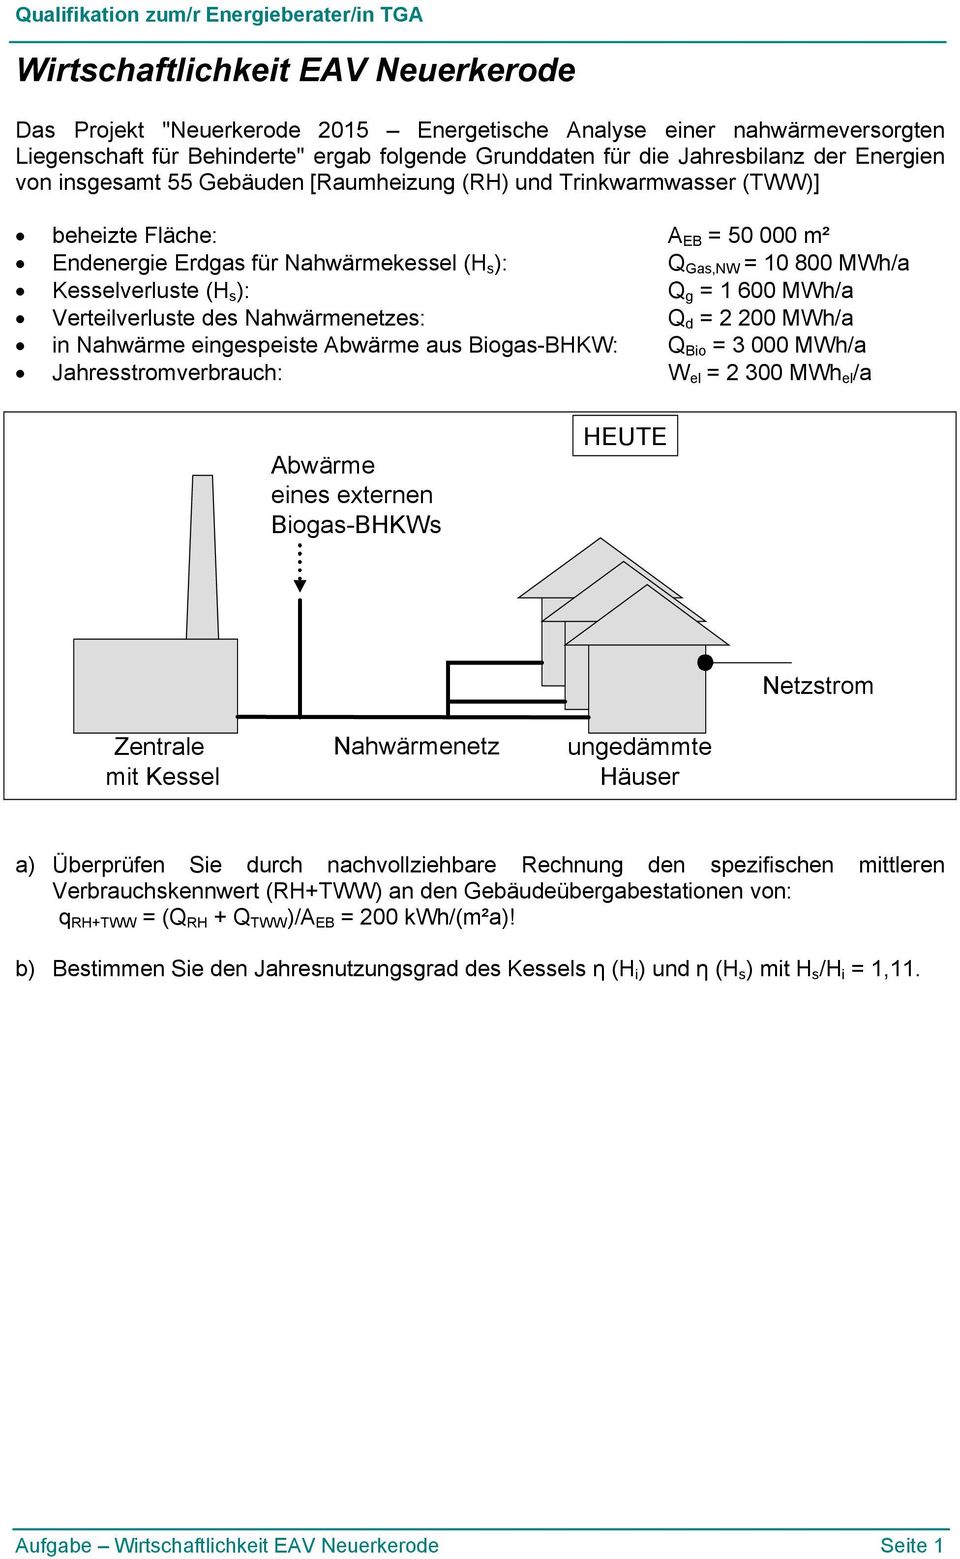 g = 1 600 MWh/a Verteilverluste des Nahwärmenetzes: Q d = 2 200 MWh/a in Nahwärme eingespeiste Abwärme aus Biogas-BHKW: Q Bio = 3 000 MWh/a Jahresstromverbrauch: W el = 2 300 MWh el /a Abwärme eines